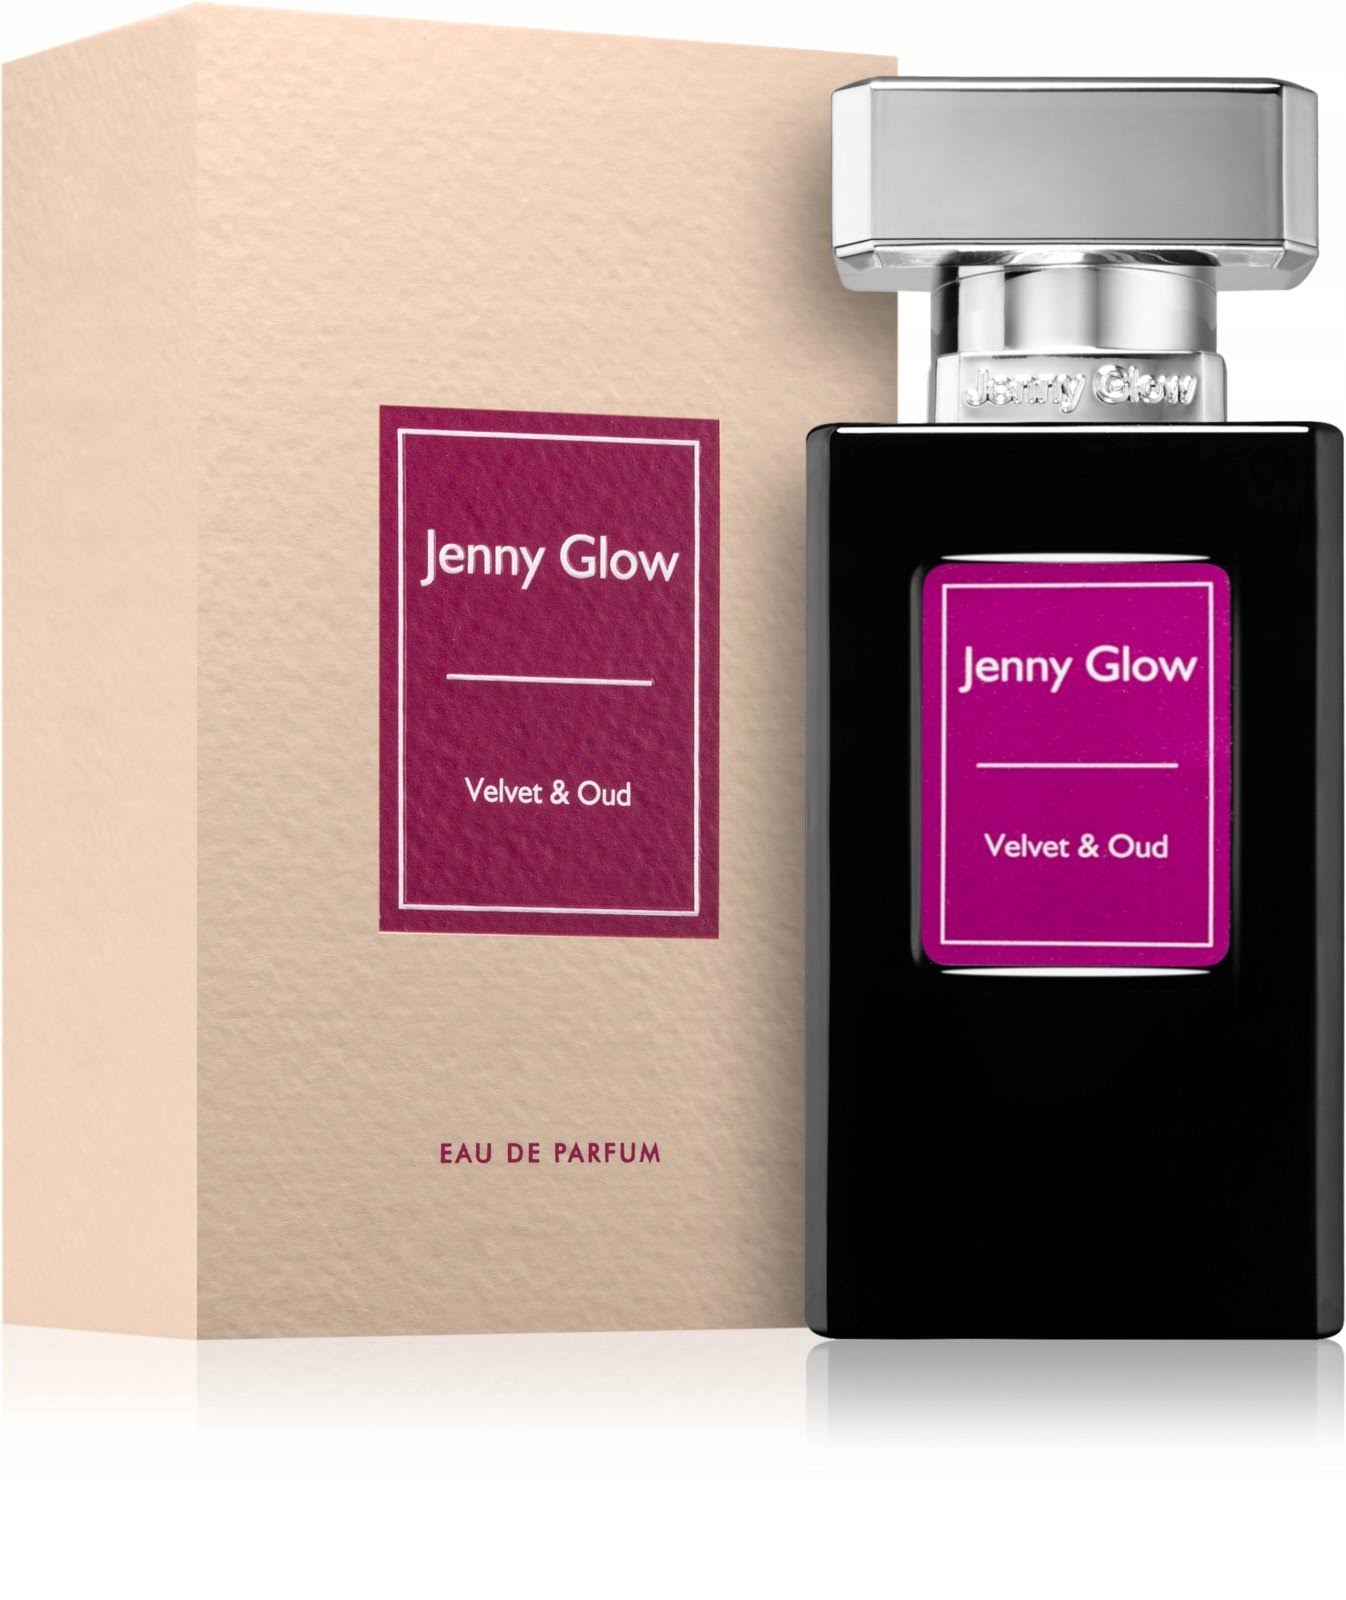 Jenny Glow Velvet & Oud Eau De Parfum, 30ml